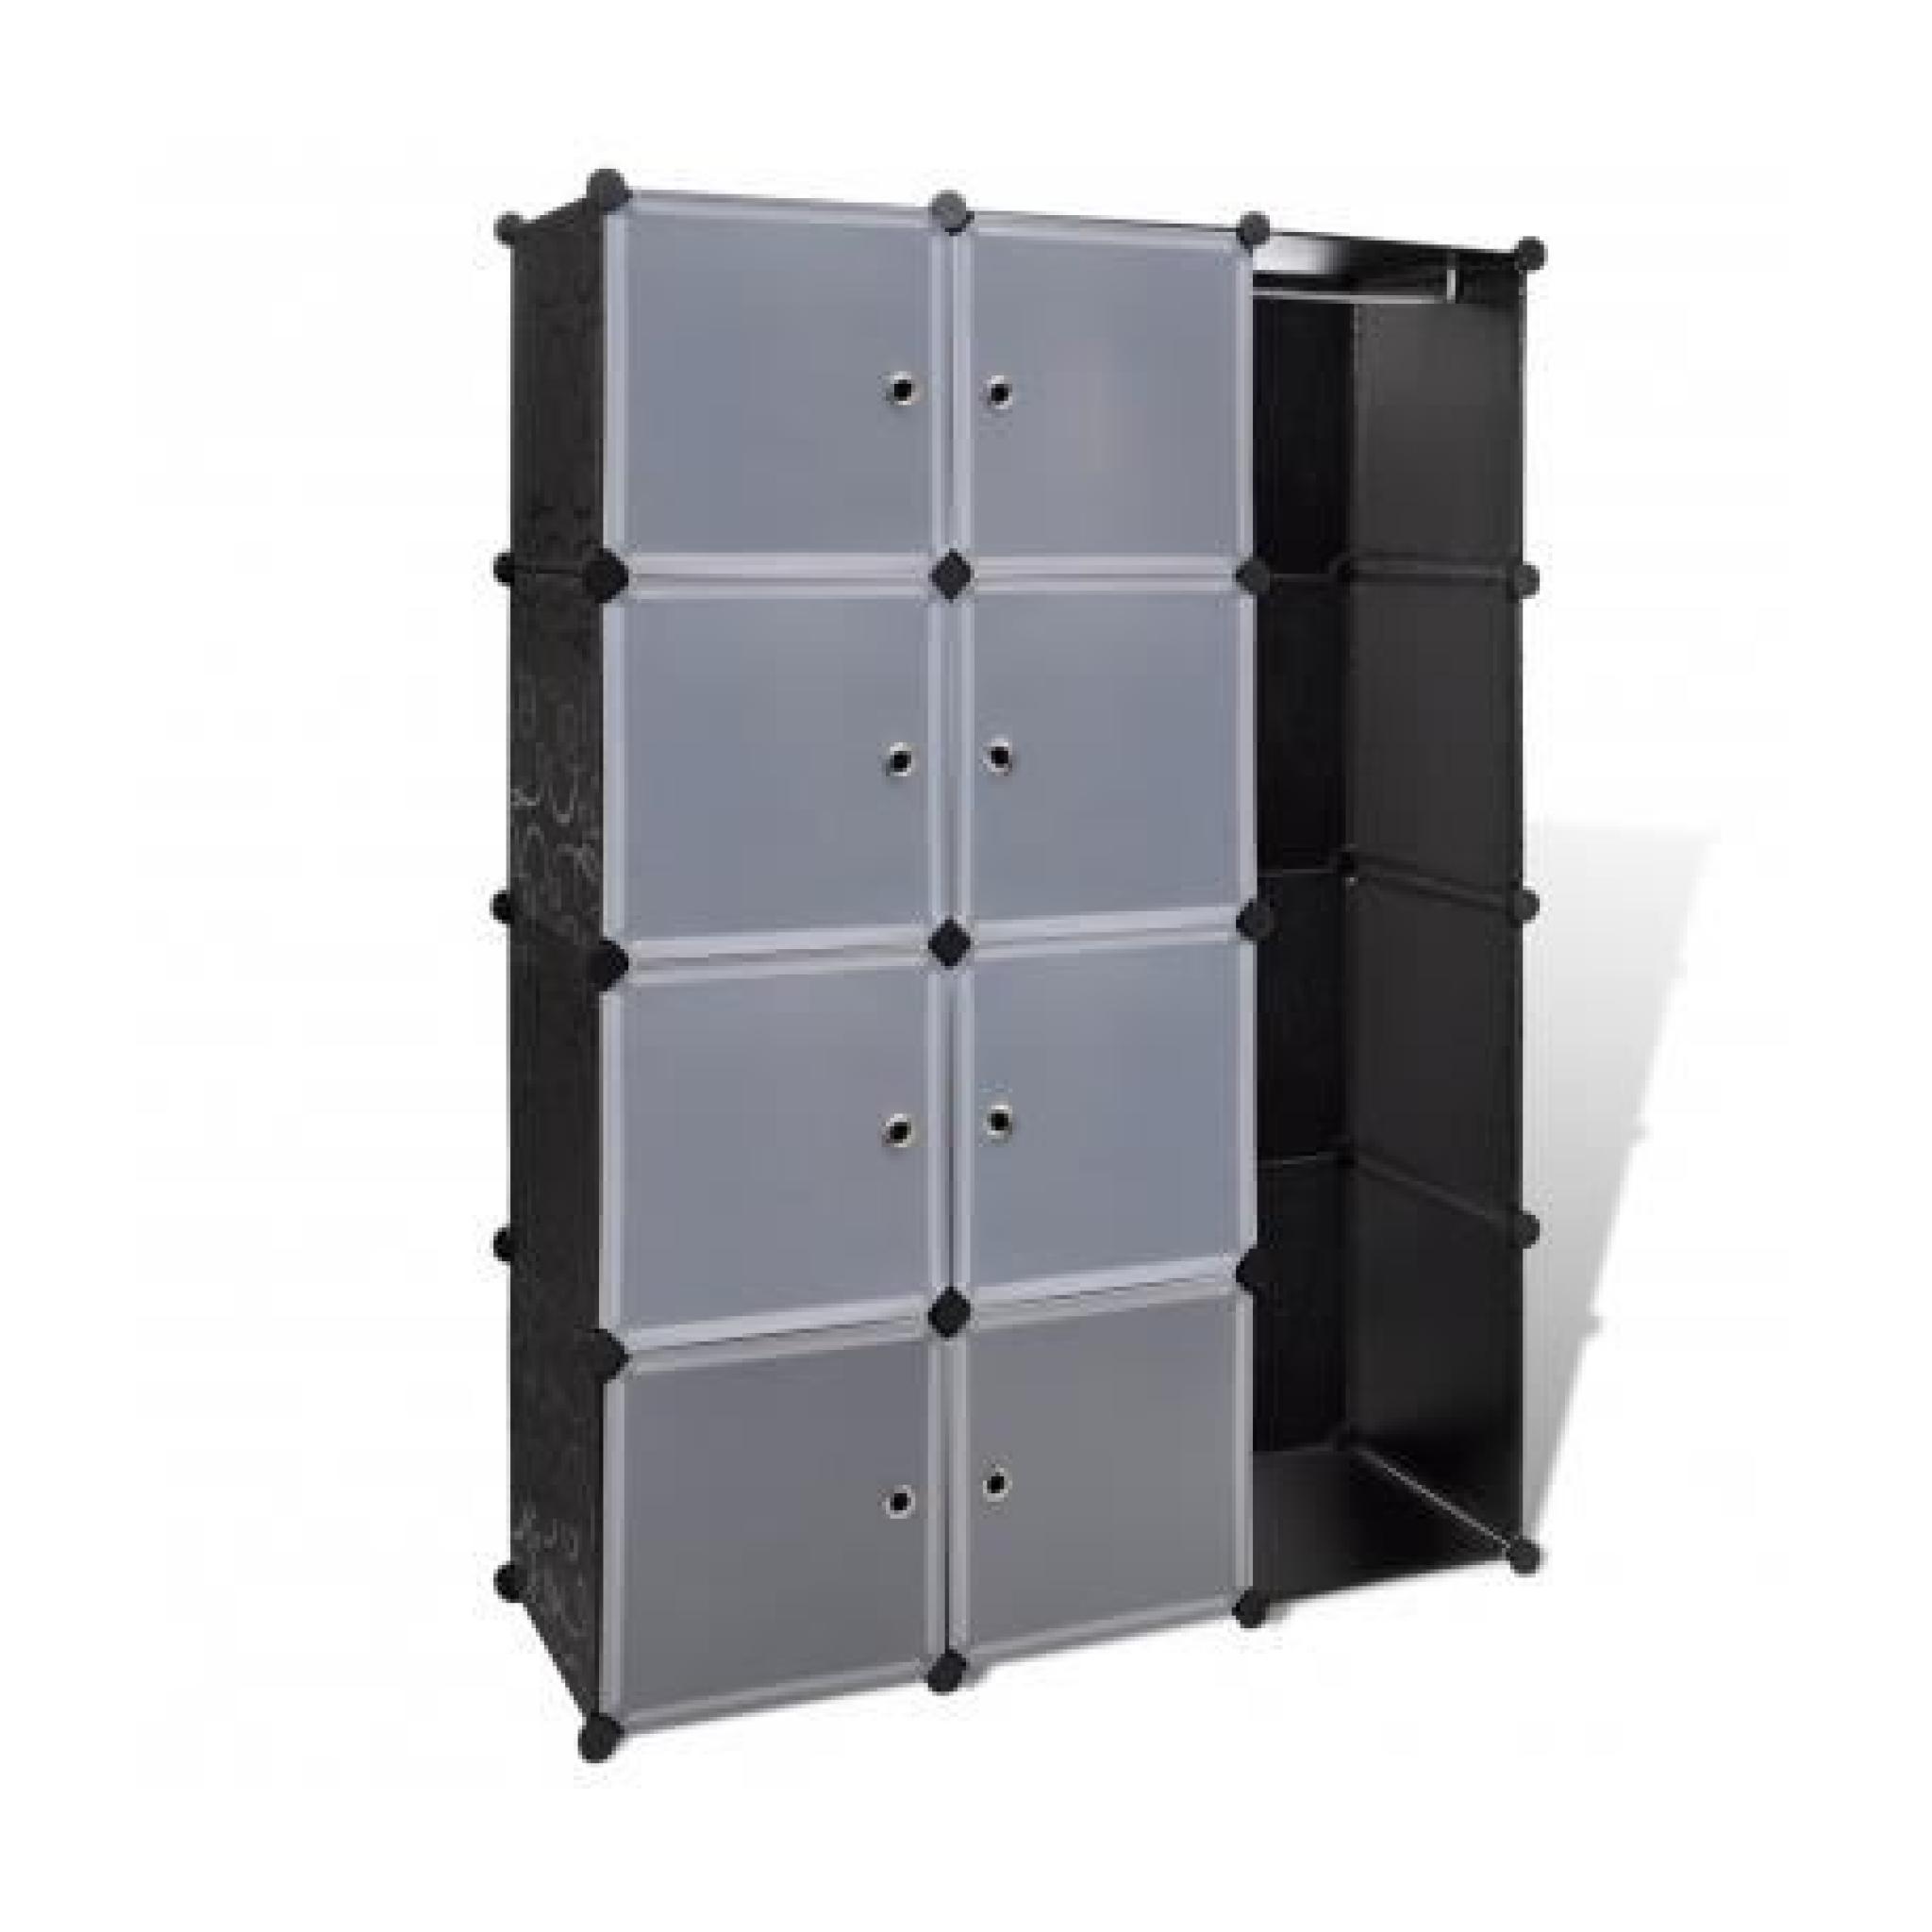 Cabinet modulable noir et blanc avec 9 compartiments 37 x 115 x 150cm pas cher